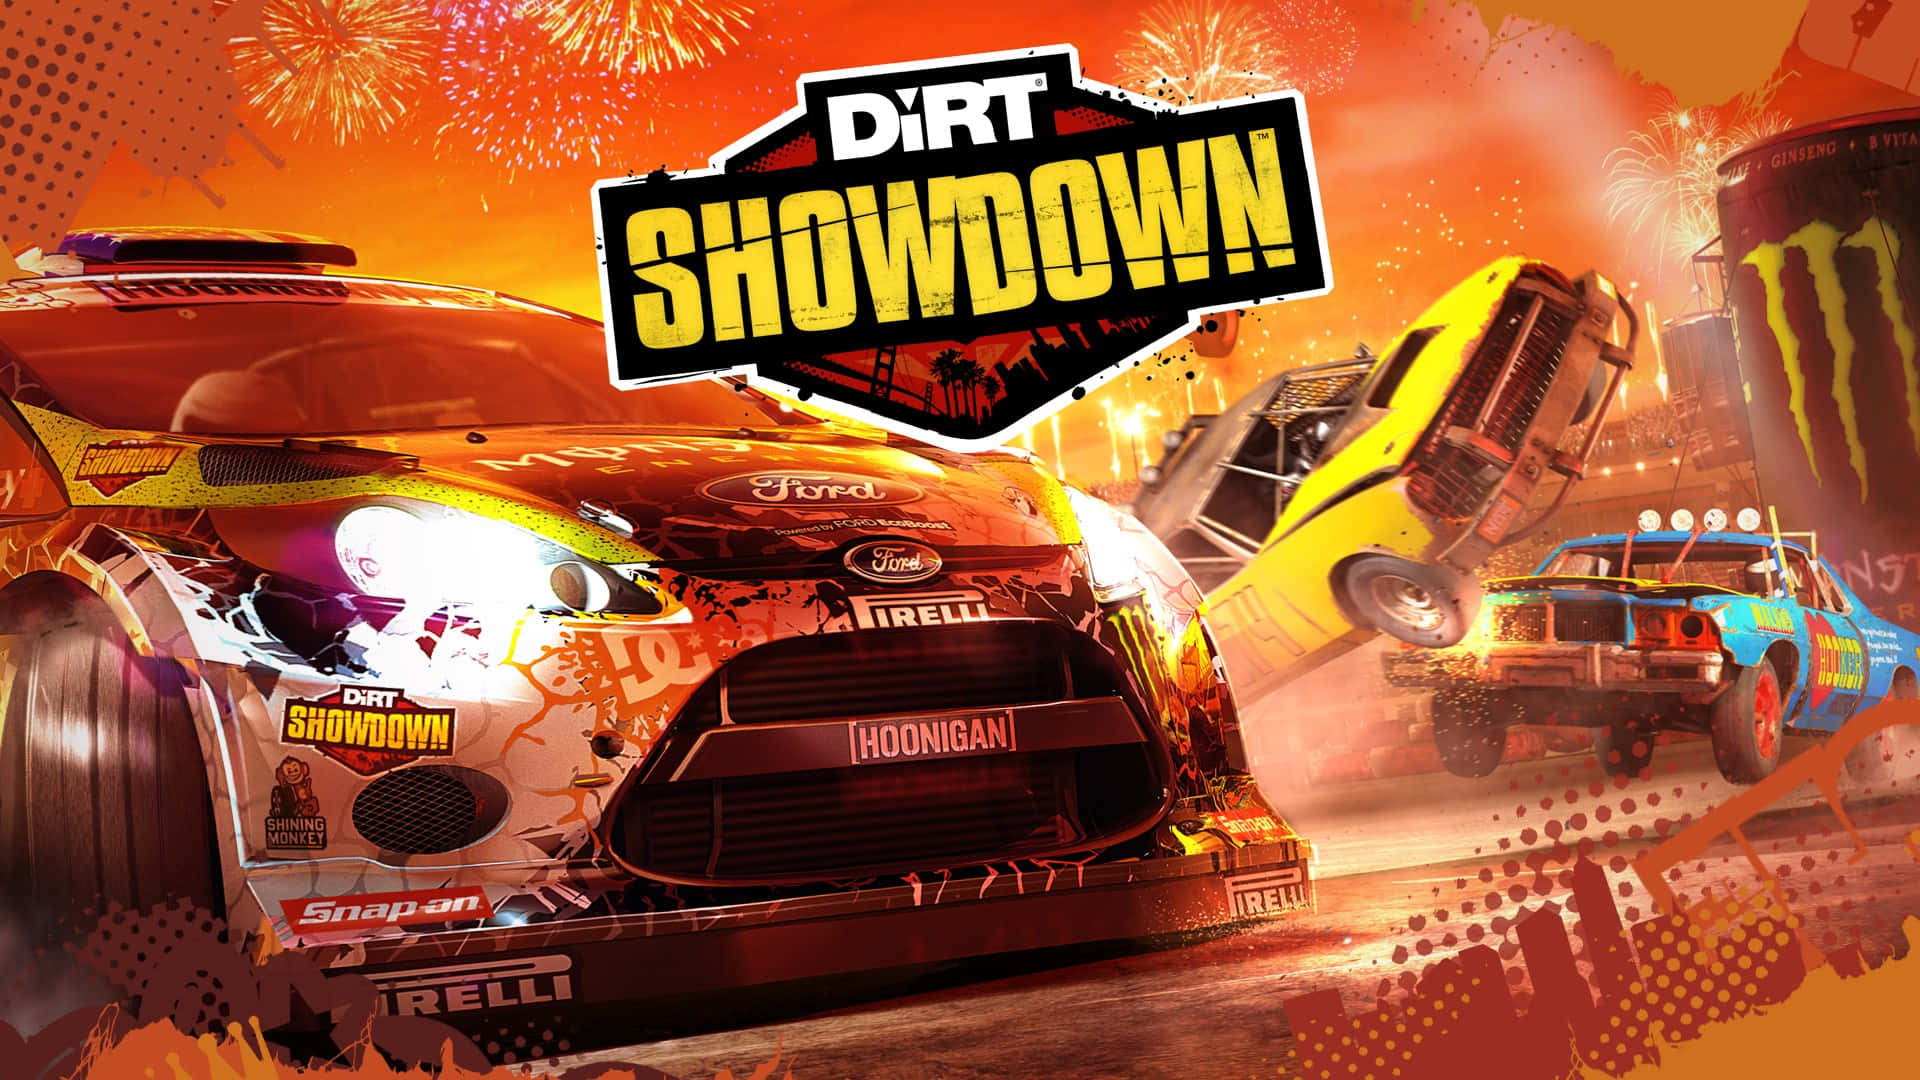 1920x1080 Dirt Showdown Background